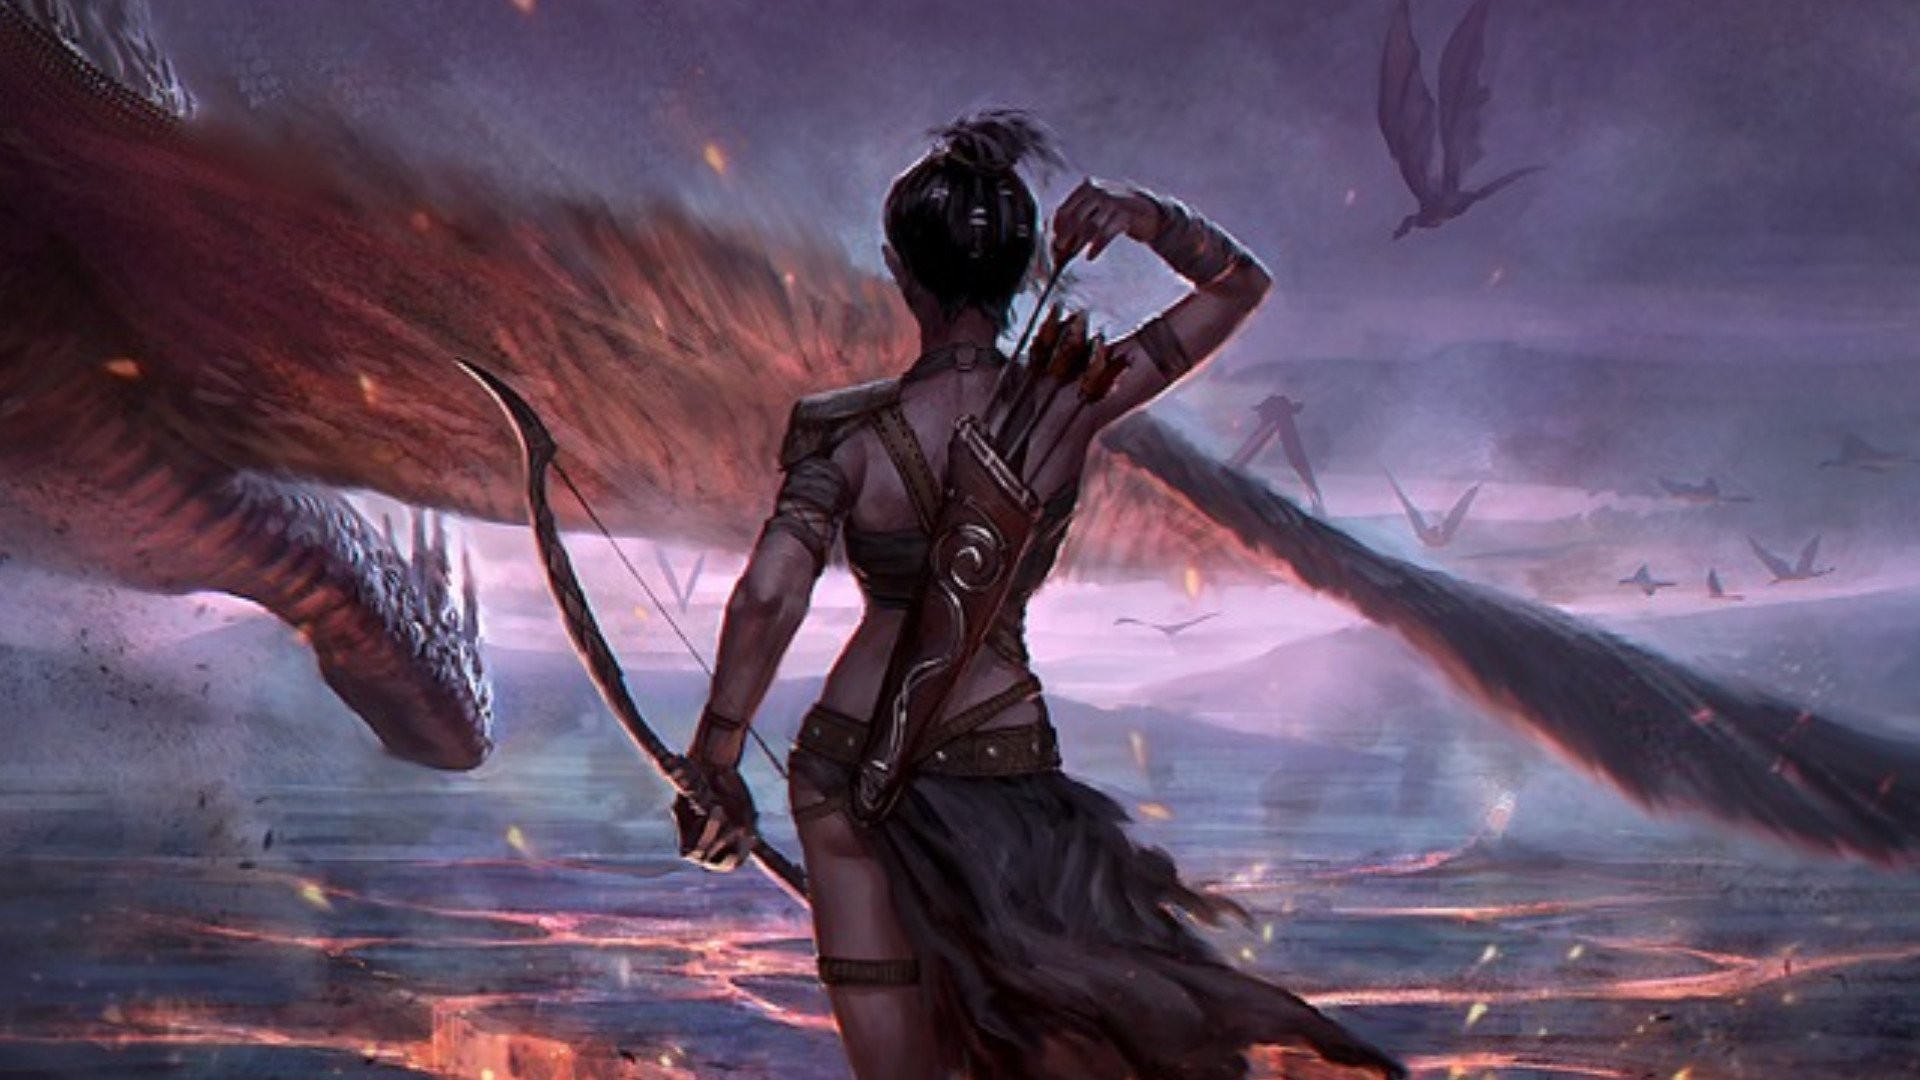 fondo de pantalla de mujer guerrera,cg artwork,demonio,personaje de ficción,ilustración,oscuridad